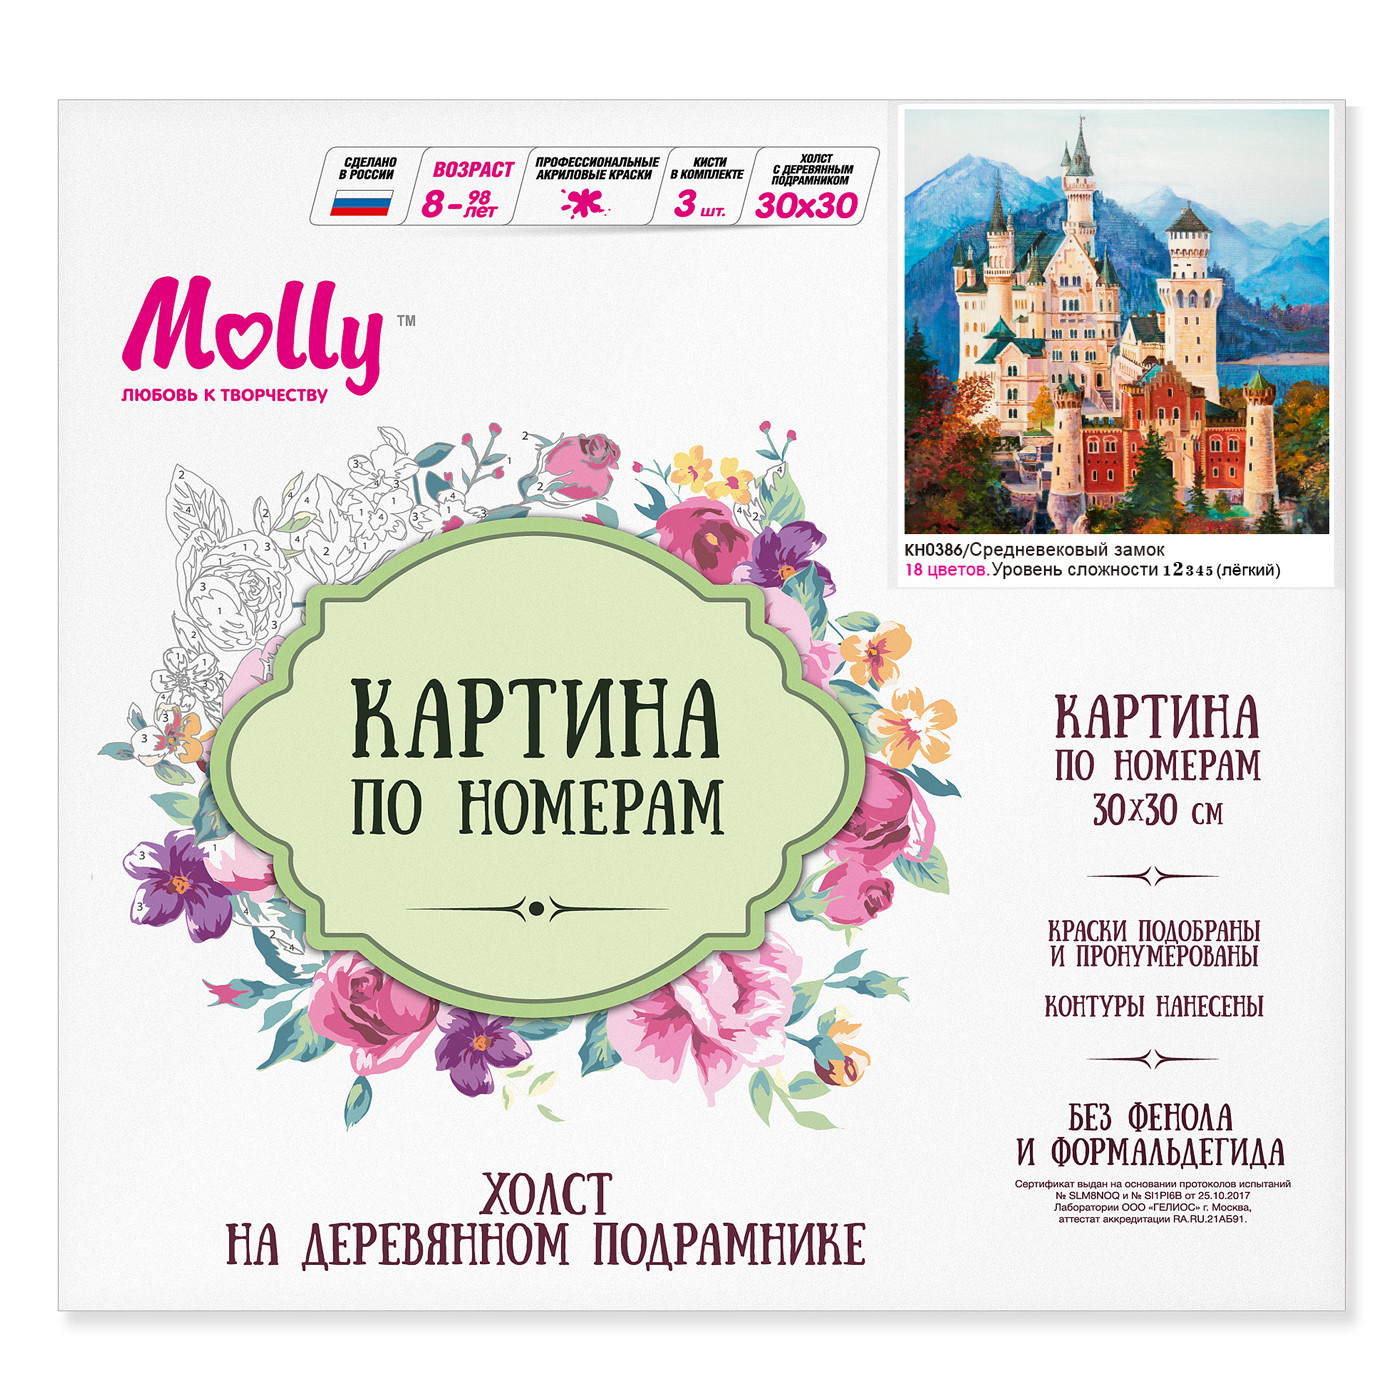 Картина по номерам Molly Средневековый замок 30х30 см 18 цветов